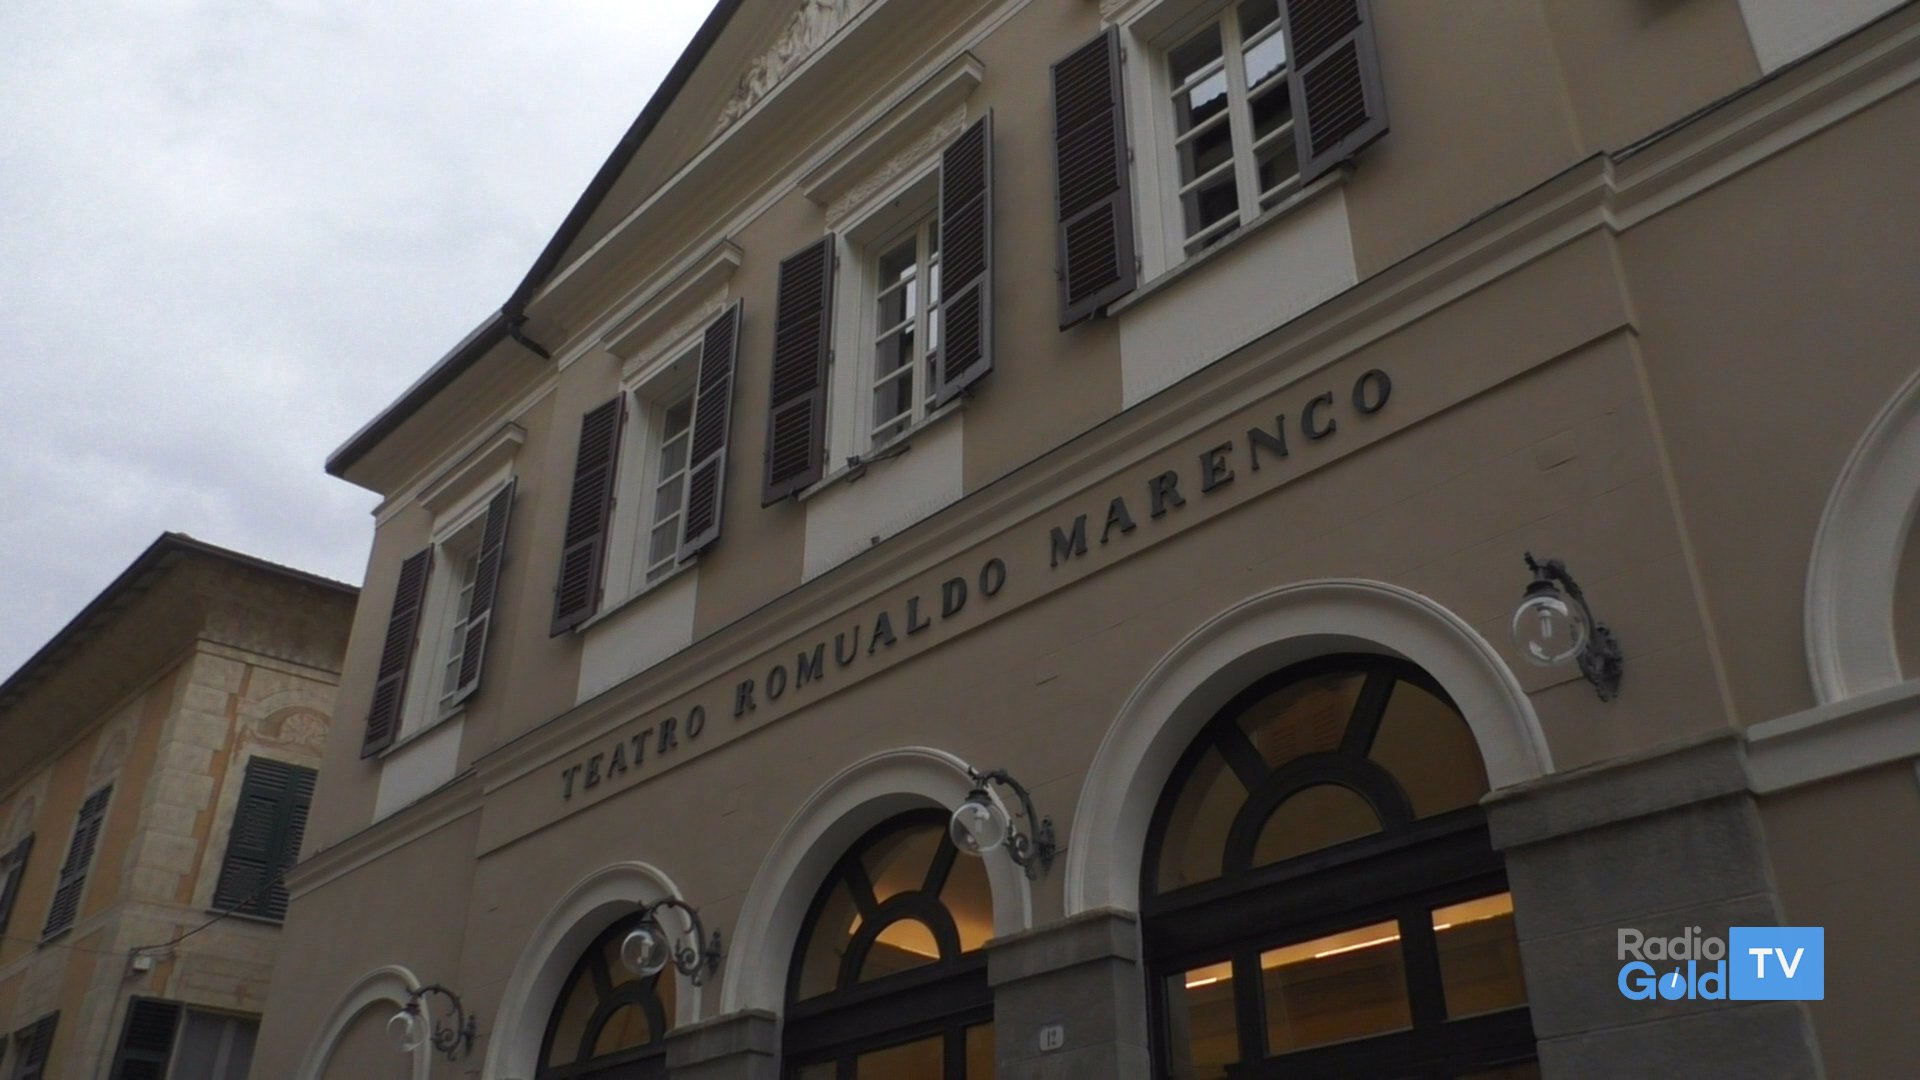 Dopo 70 anni si riaprono le porte del Teatro Marenco di Novi Ligure